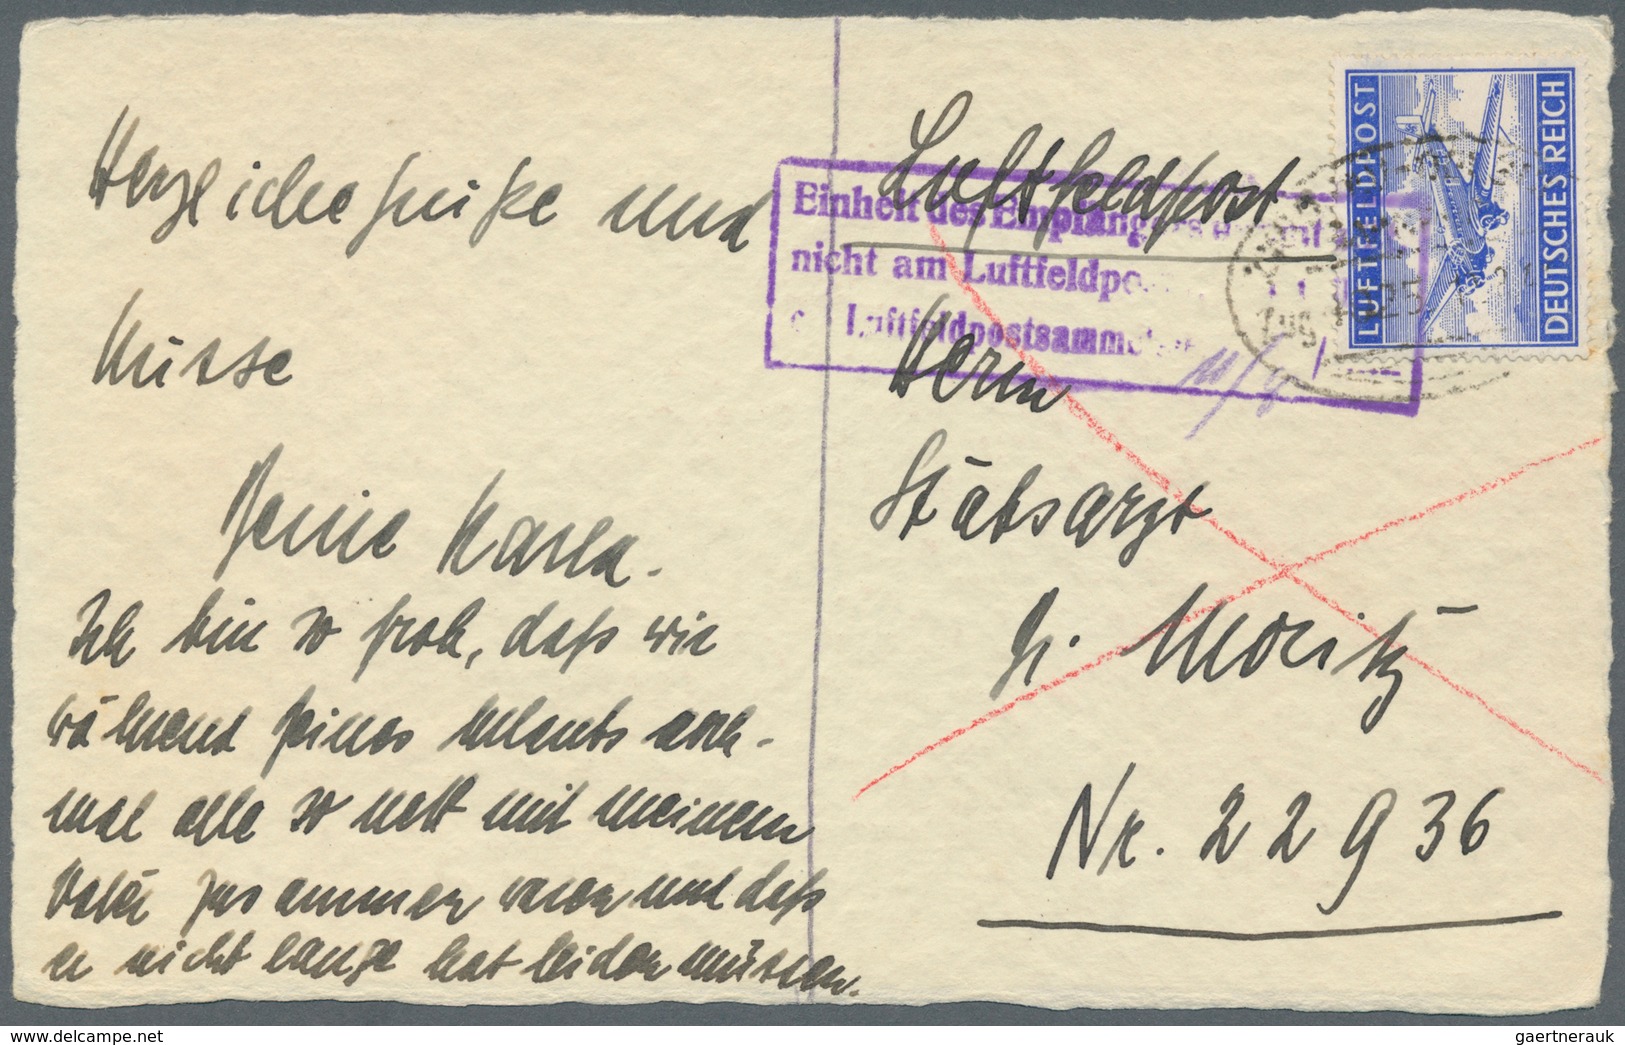 Feldpost 2. Weltkrieg: 1939/1944, 61 Feldpostbelege, Eilnachrichten-, Lebenszeichen- und Eilauftrags